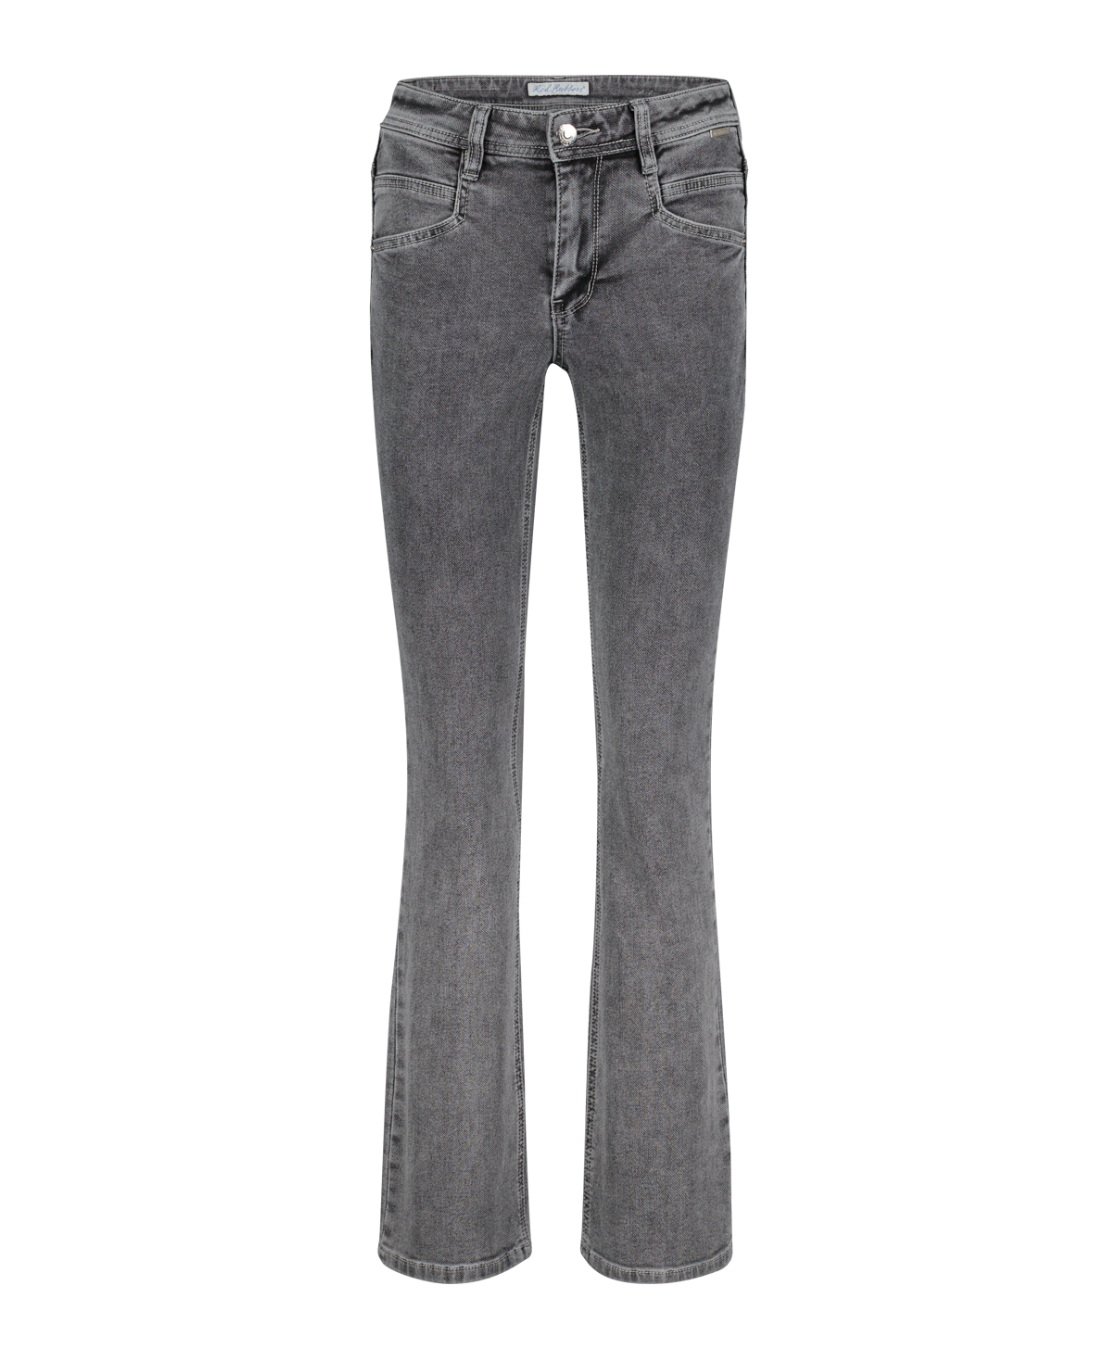 Red Button Babette grey jeans 30" length leg - last ones!